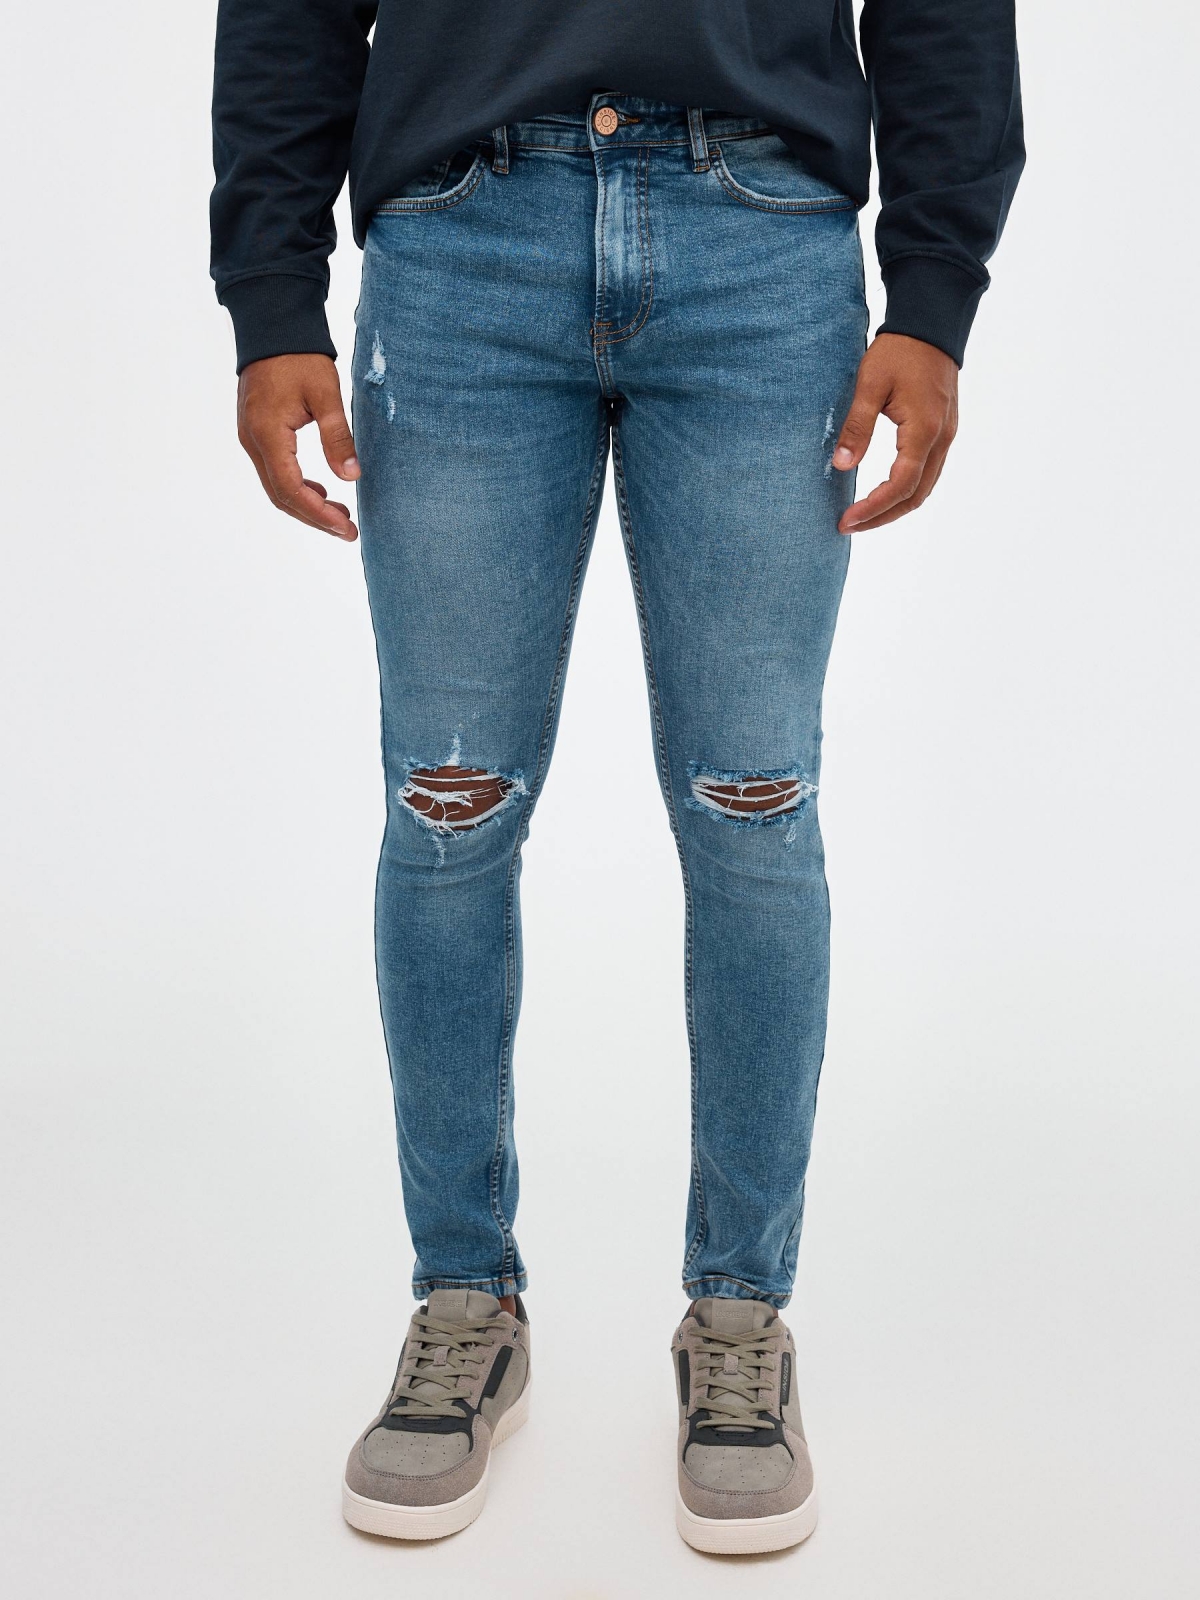 Jeans skinny partes inferiores rasgadas azul vista meia frontal